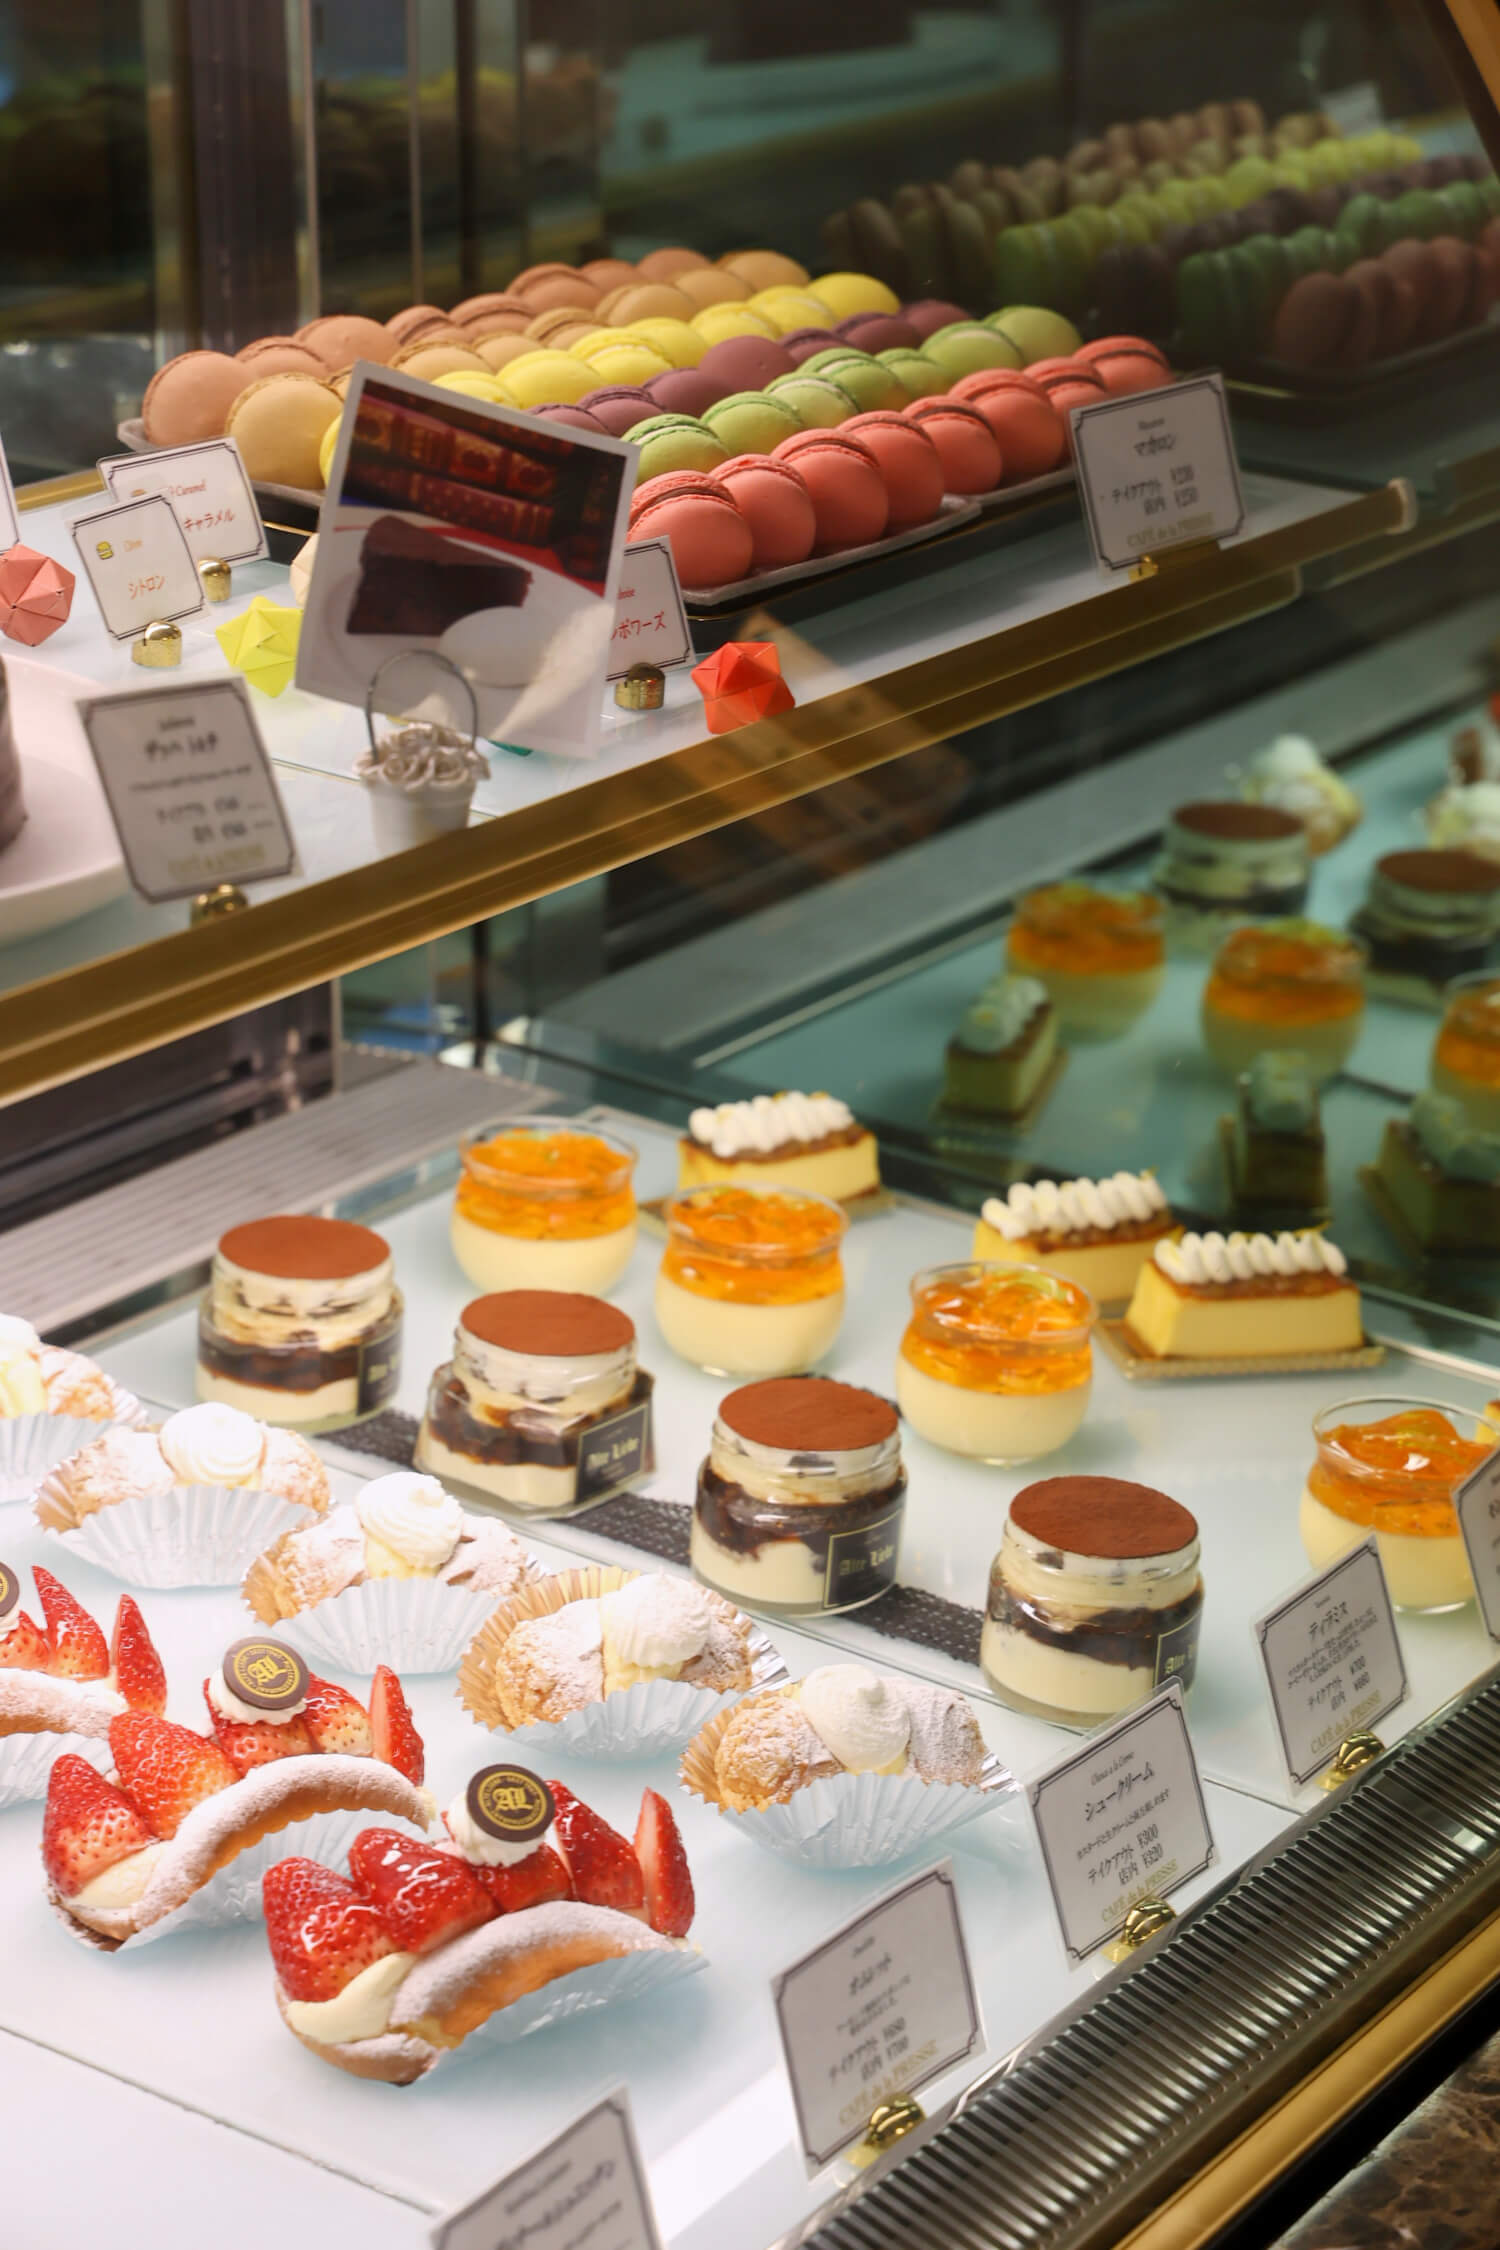 パティシエが作るフランス菓子はテイクアウトも可。人気のマカロンは1個から買える。イートイン250円。